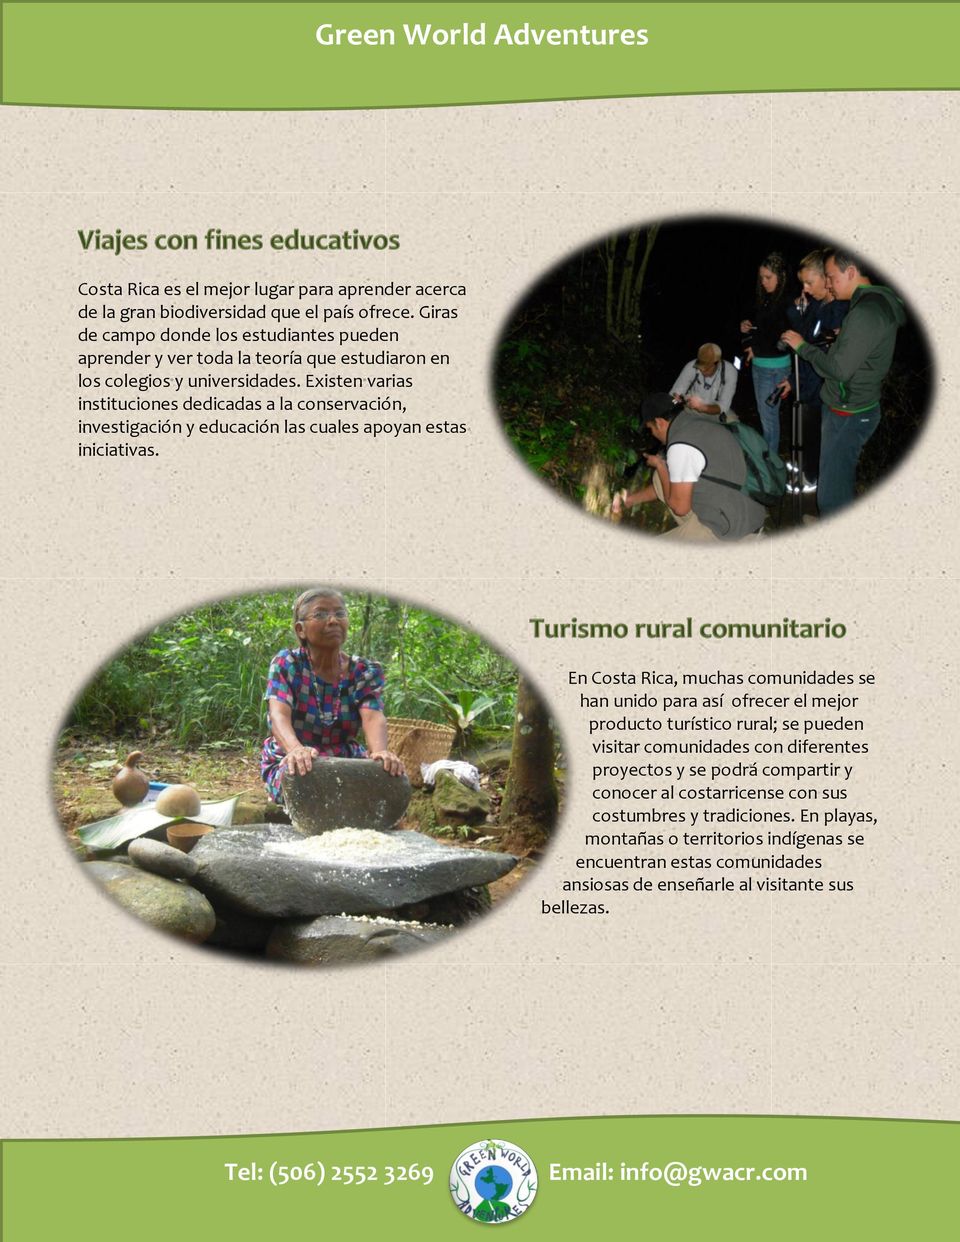 Existen varias instituciones dedicadas a la conservación, investigación y educación las cuales apoyan estas iniciativas.